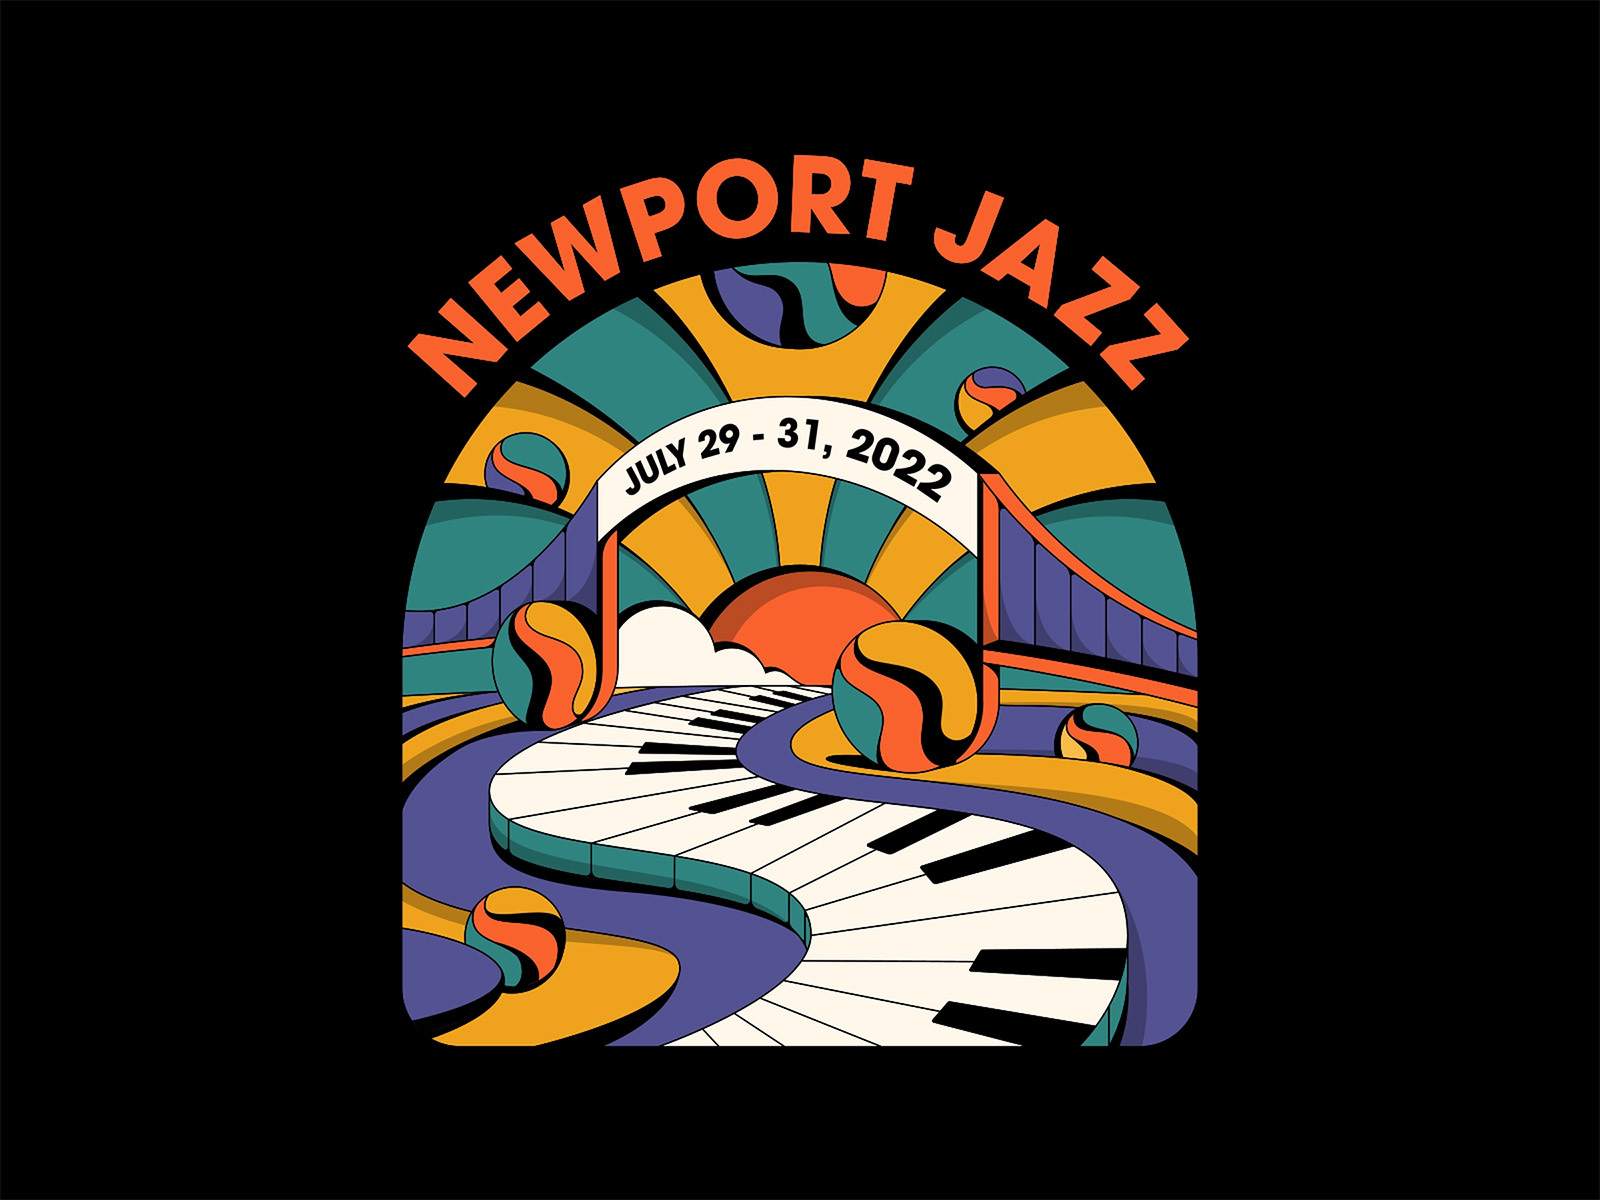 Newport Jazz Festival 2022 Veerle's Blog 4.0